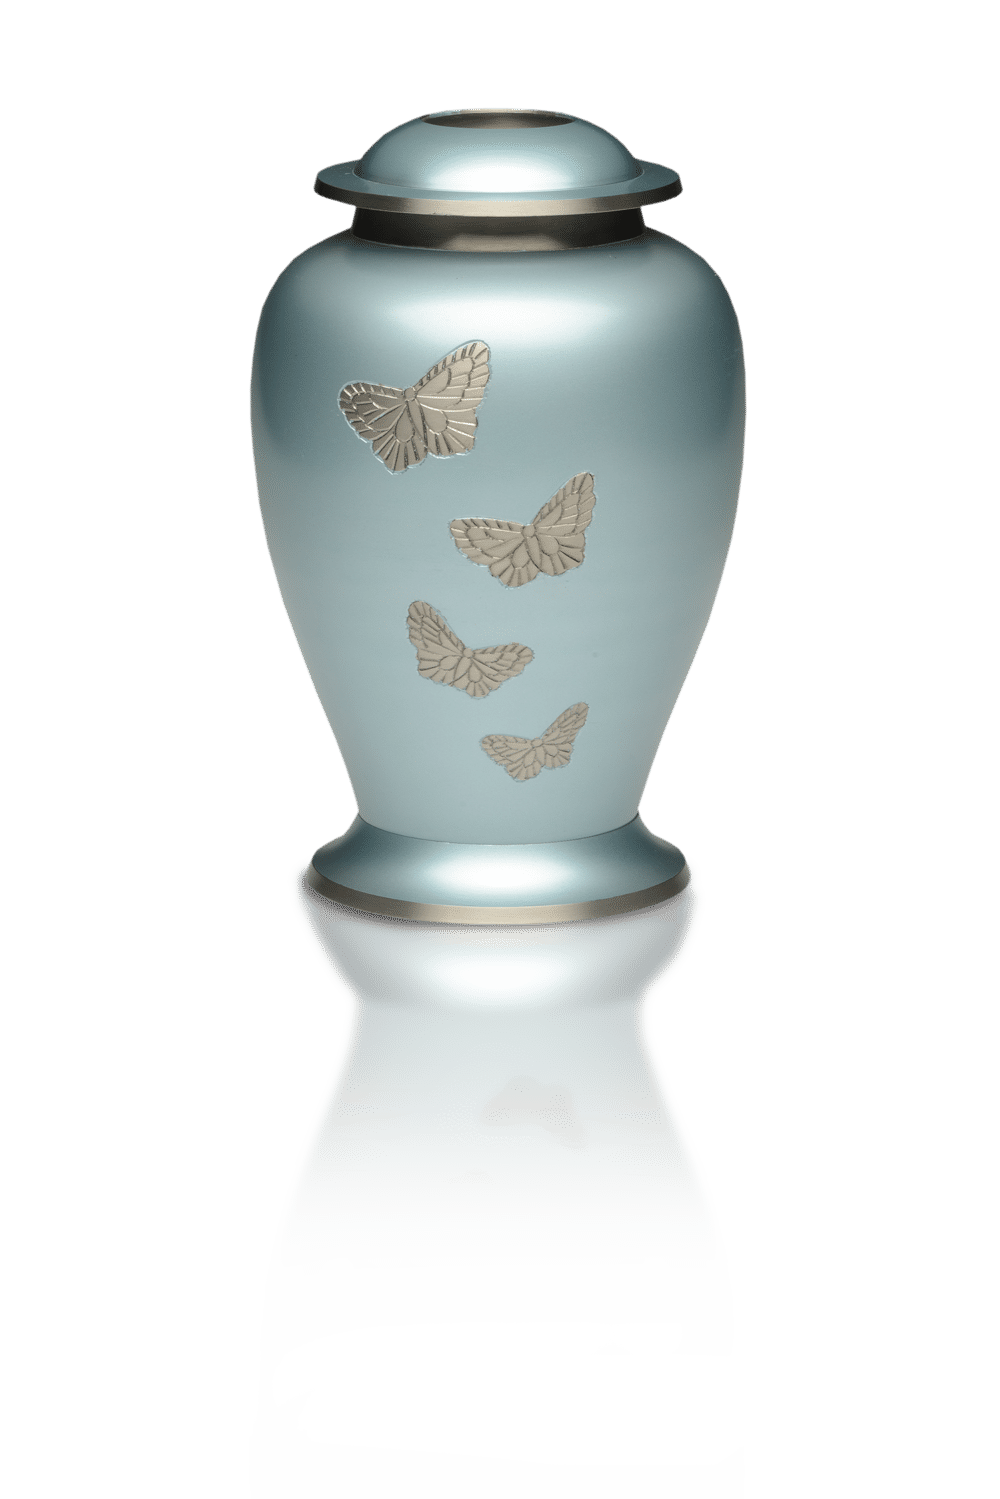 New Avondale Brass Urn with Butterflies